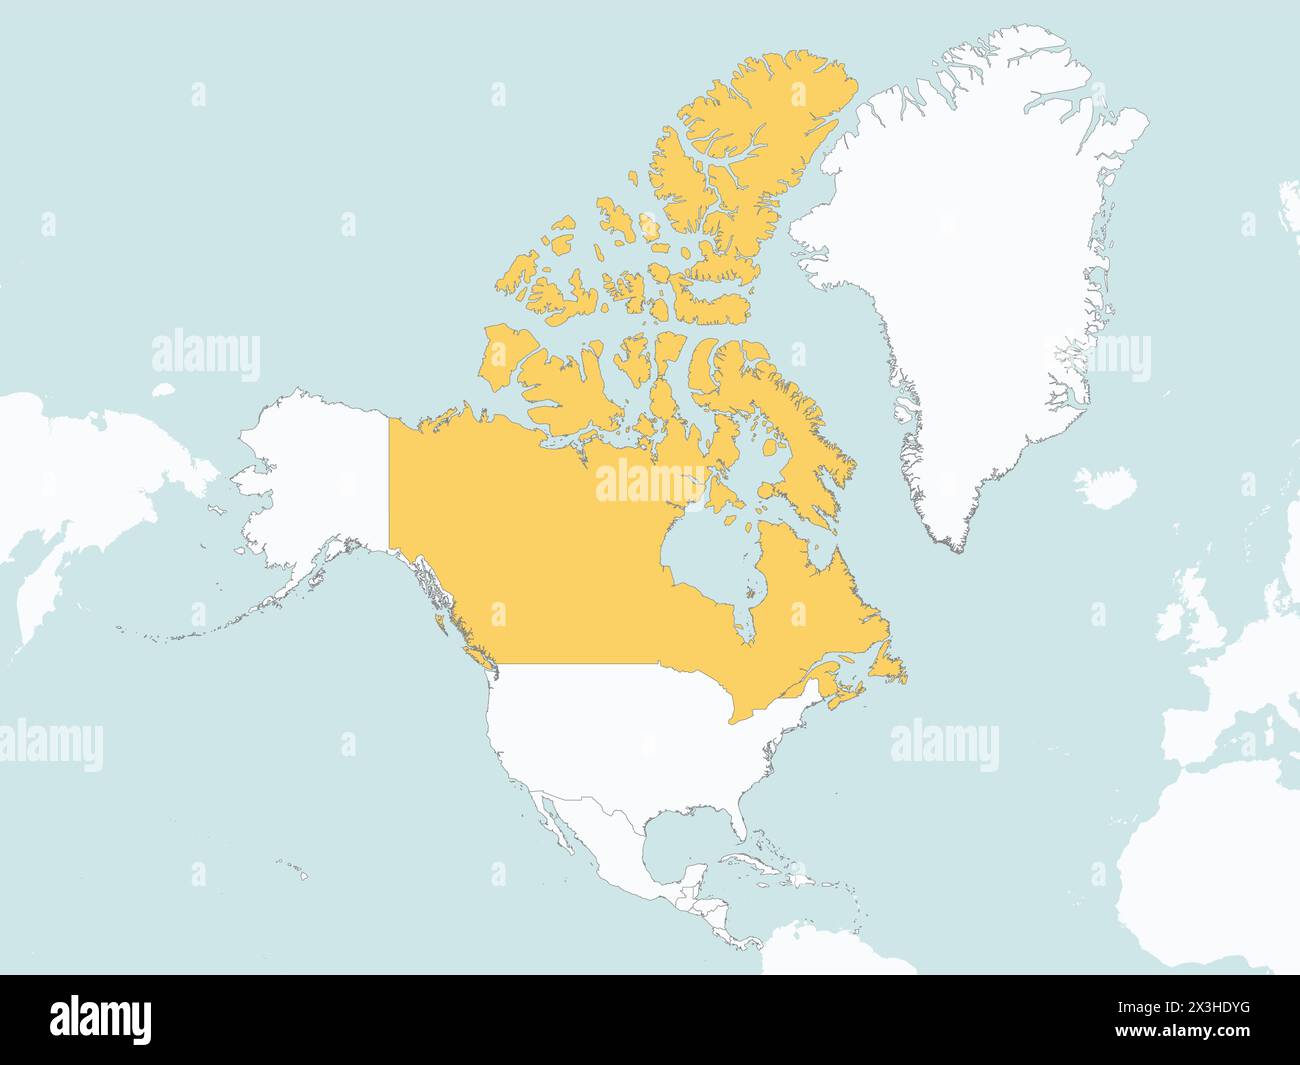 Orangefarbene Karte KANADAS innerhalb der weißen Karte des nordamerikanischen Kontinents Stock Vektor